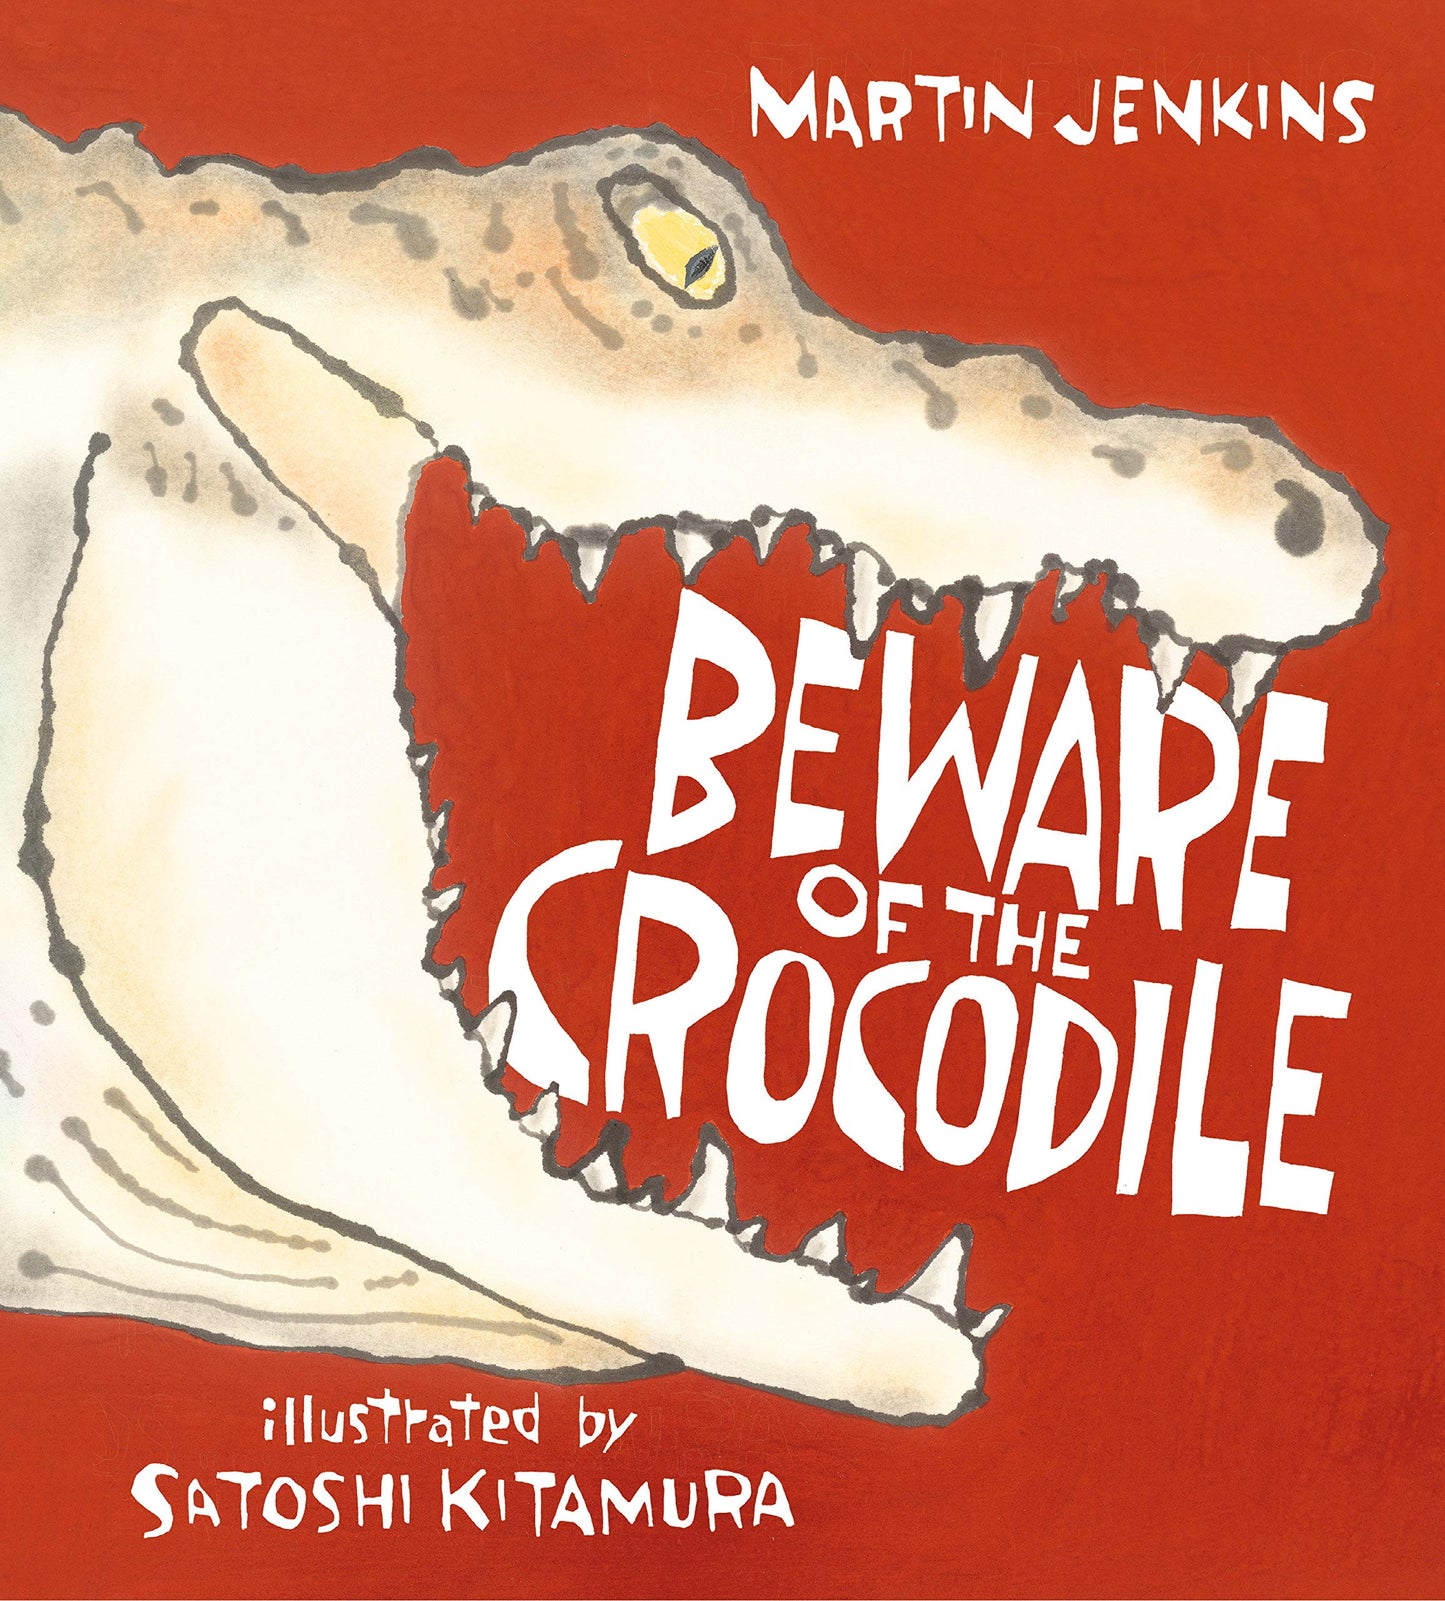 Beware of the Crocodile by Martin Jenkins and Satoshi Kitamura